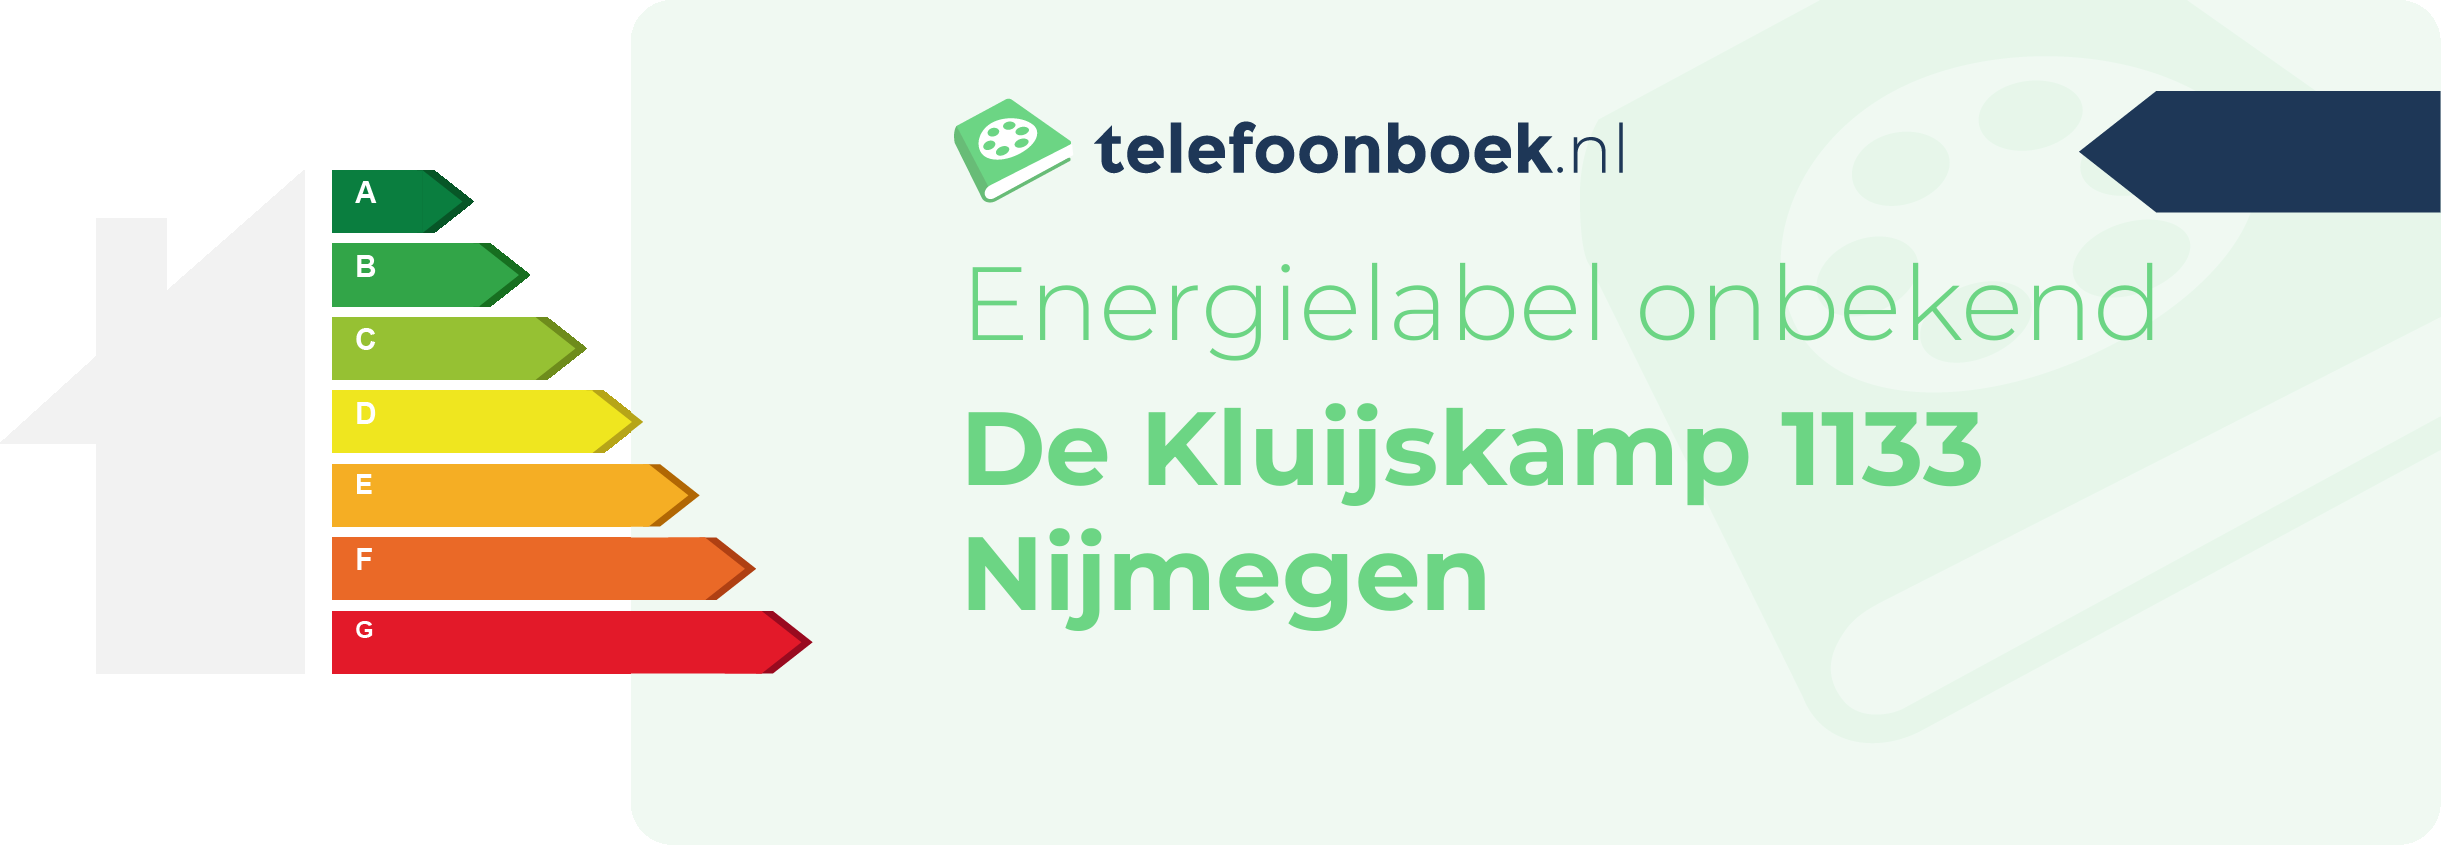 Energielabel De Kluijskamp 1133 Nijmegen